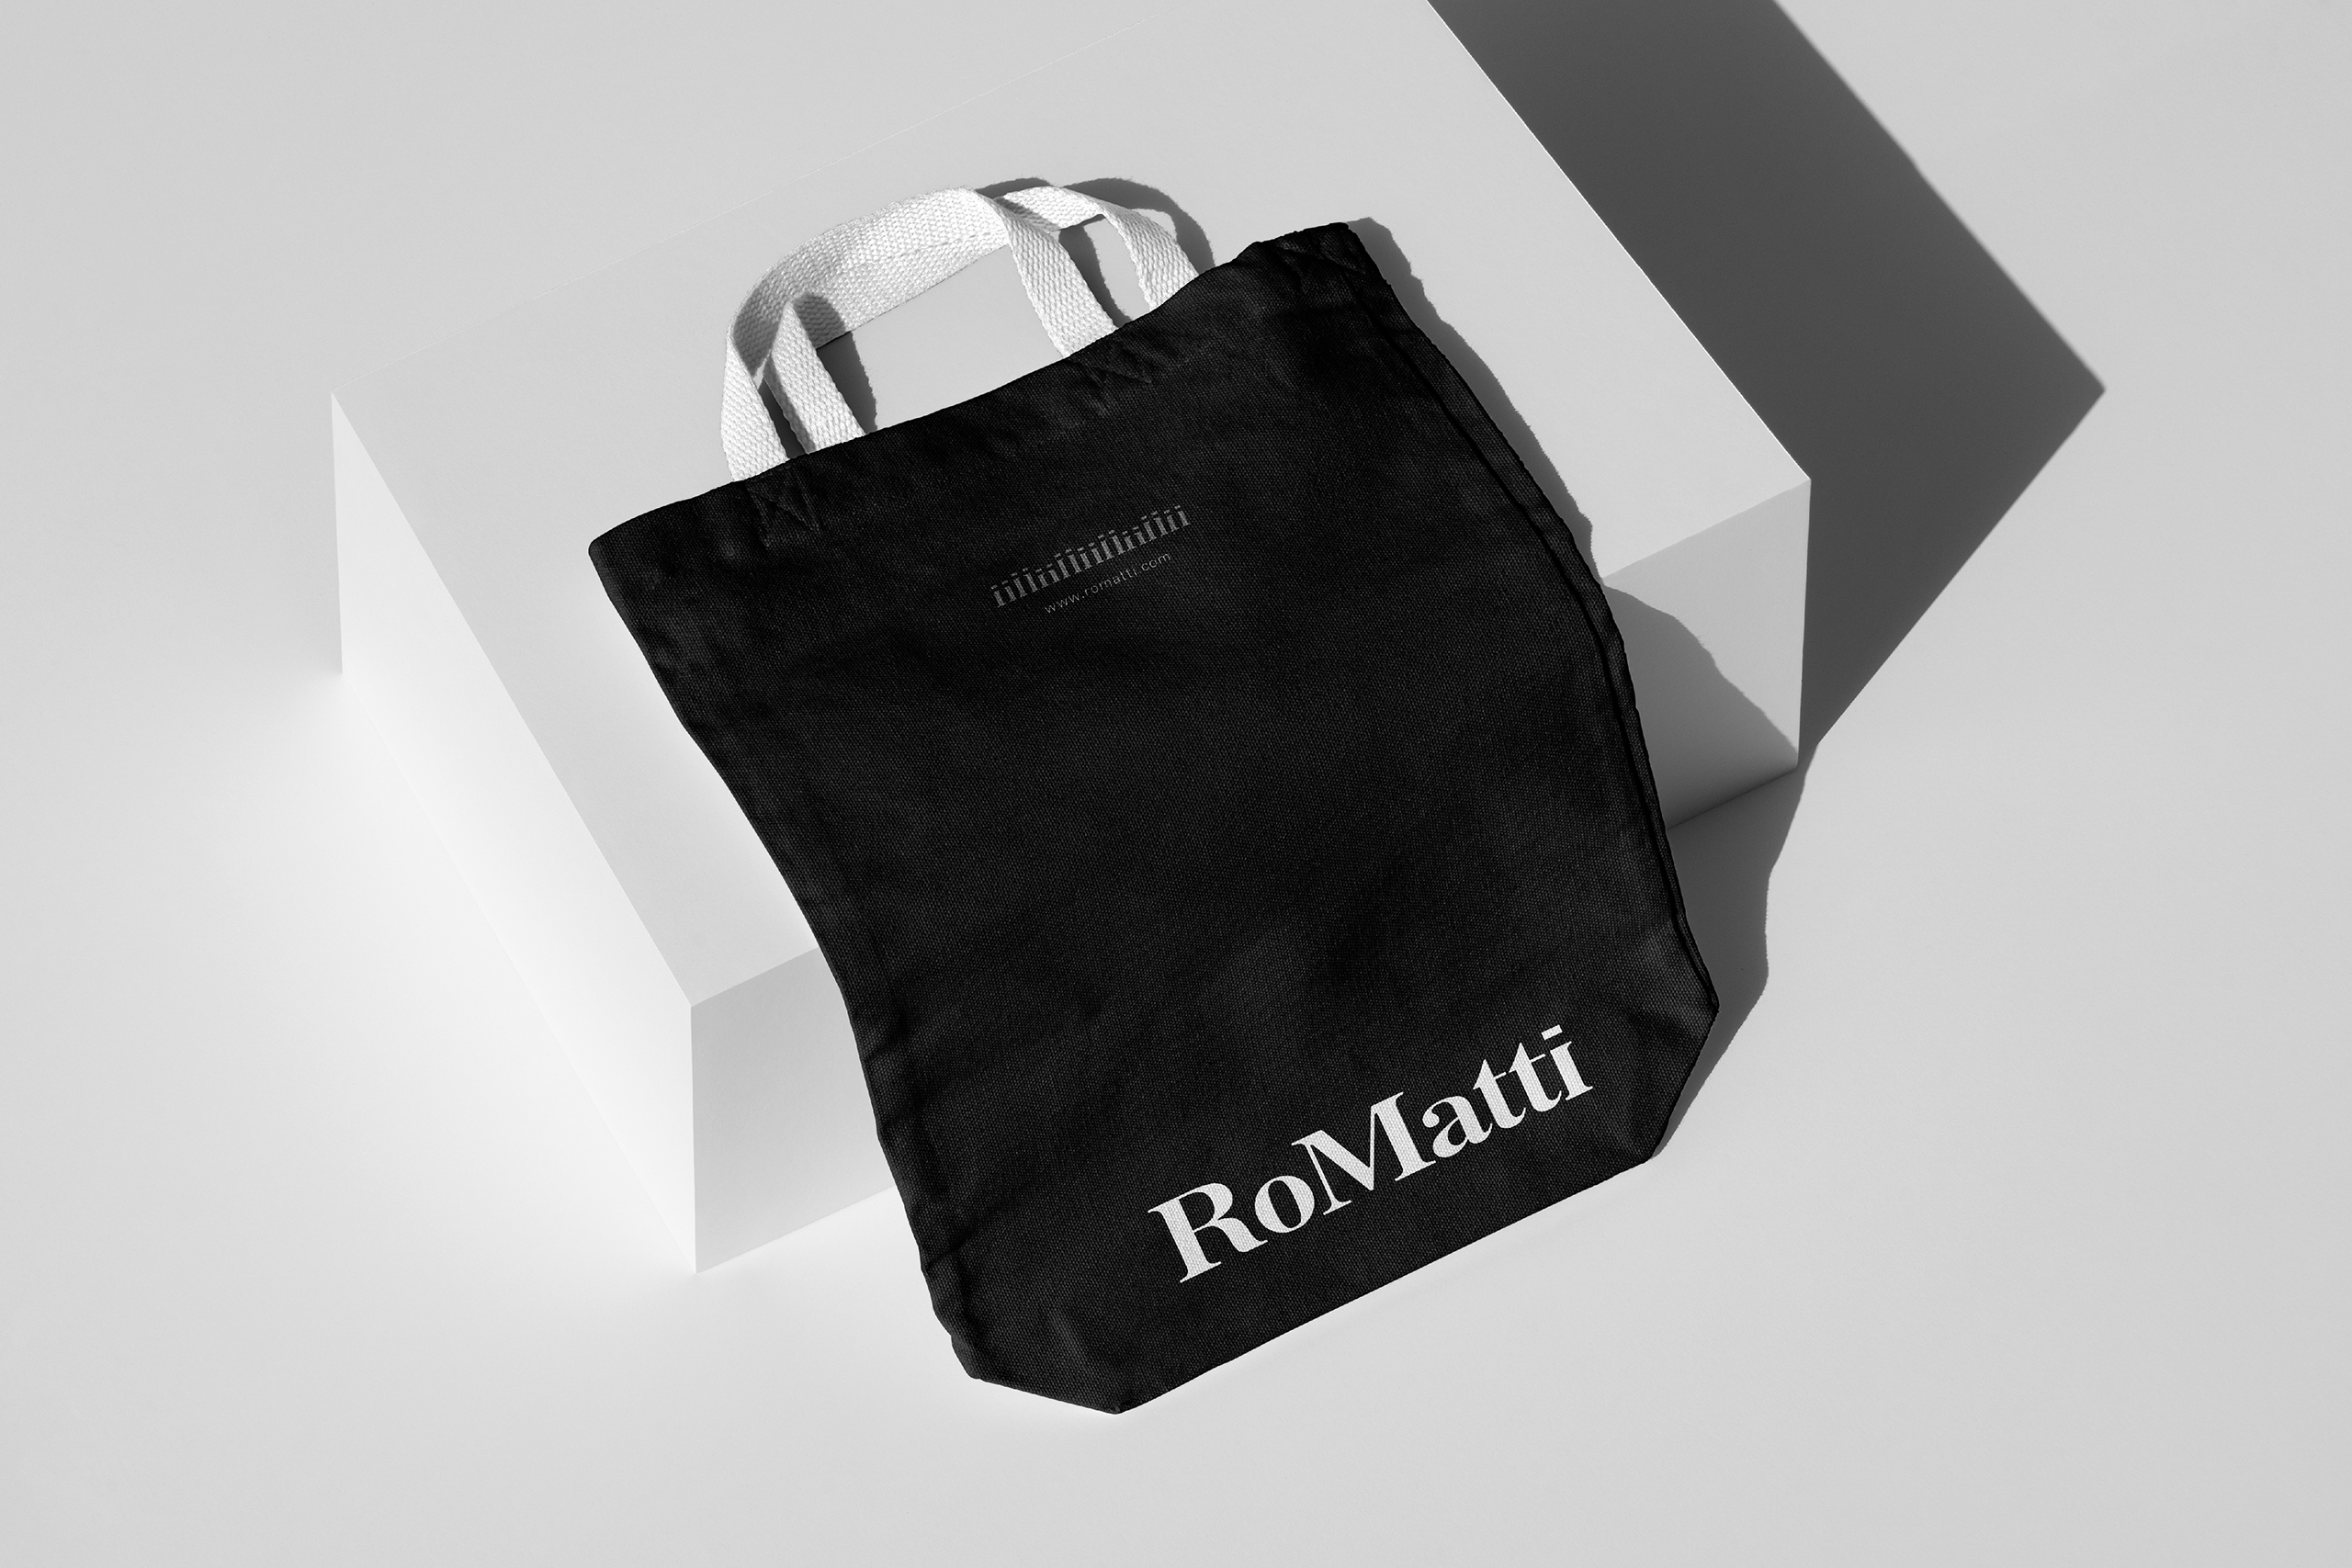 RoMatti 案例整理网页尺寸-20.jpg